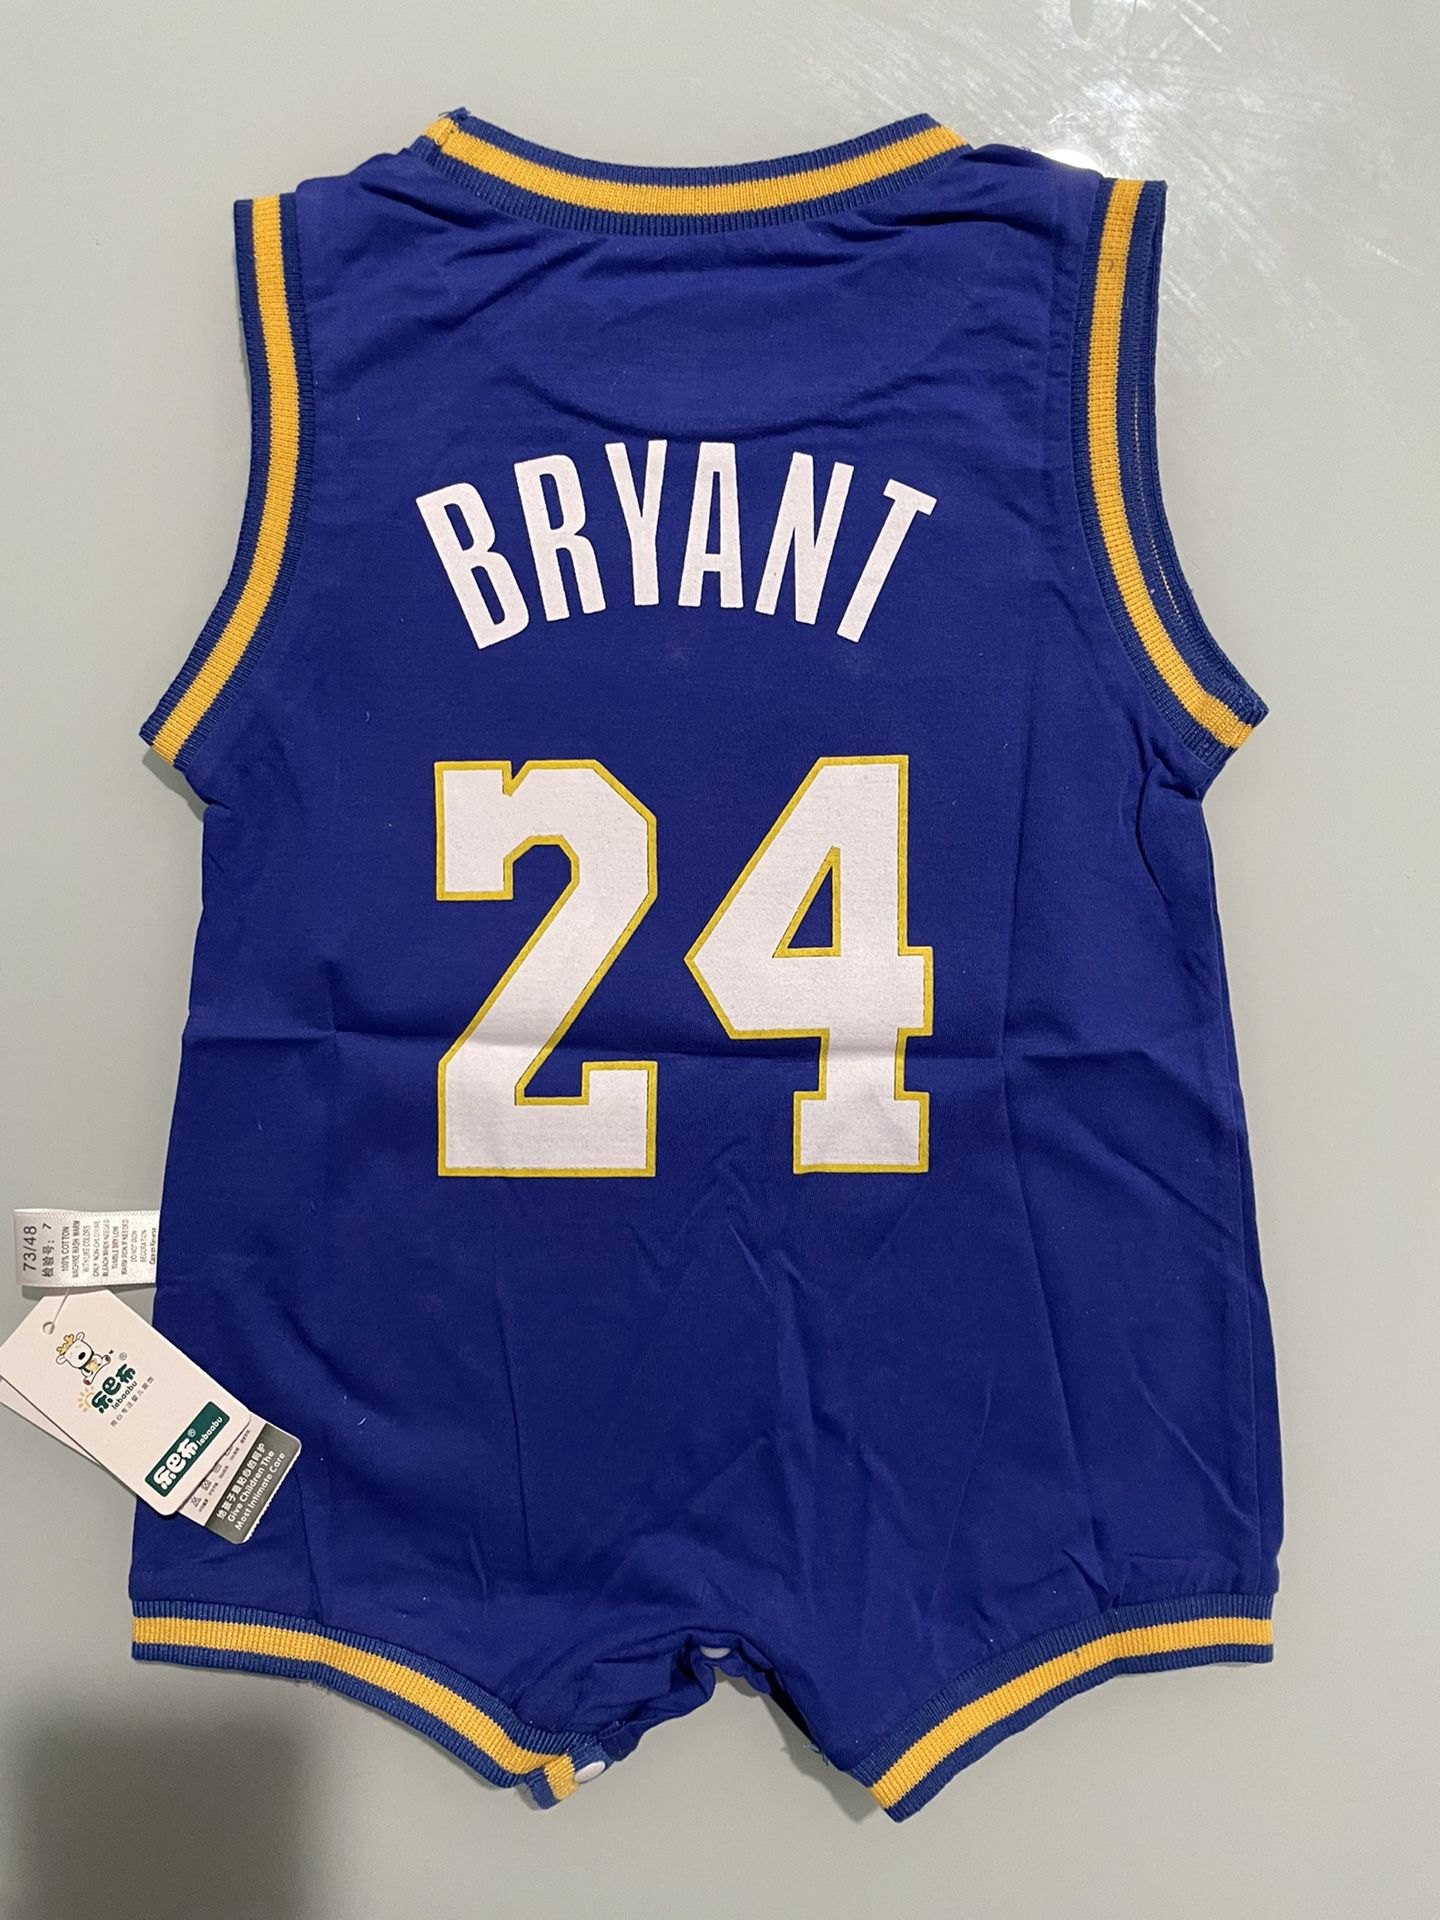 Lakers Baby Kobe Bryant Onesie for Sale in Los Angeles, CA - OfferUp